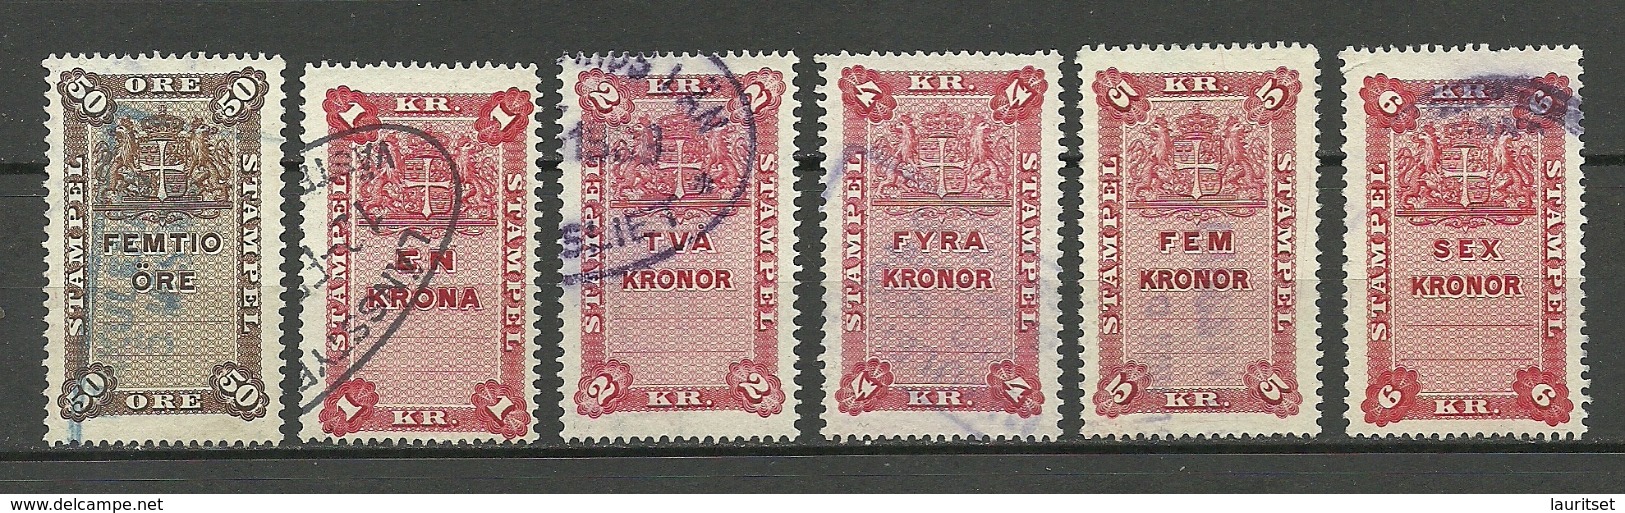 SCHWEDEN Sweden Ca 1880-1895 Lot 6 Stempelmarken Documentary Stamps O - Fiscale Zegels